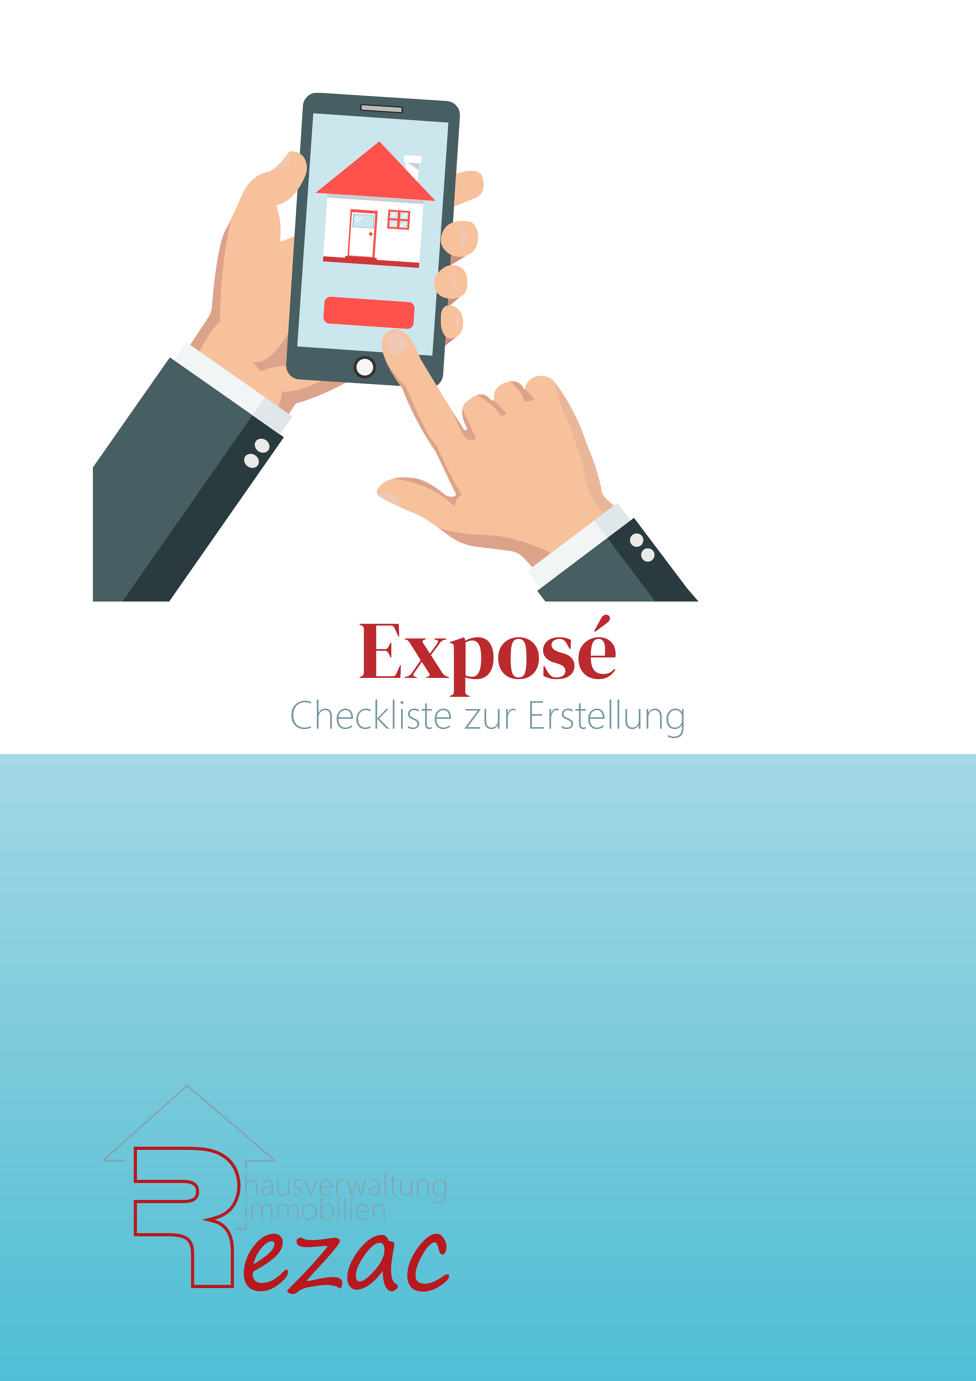 Coverbild des E-Books 'Exposé - Checkliste zur Erstellung' von Rezac